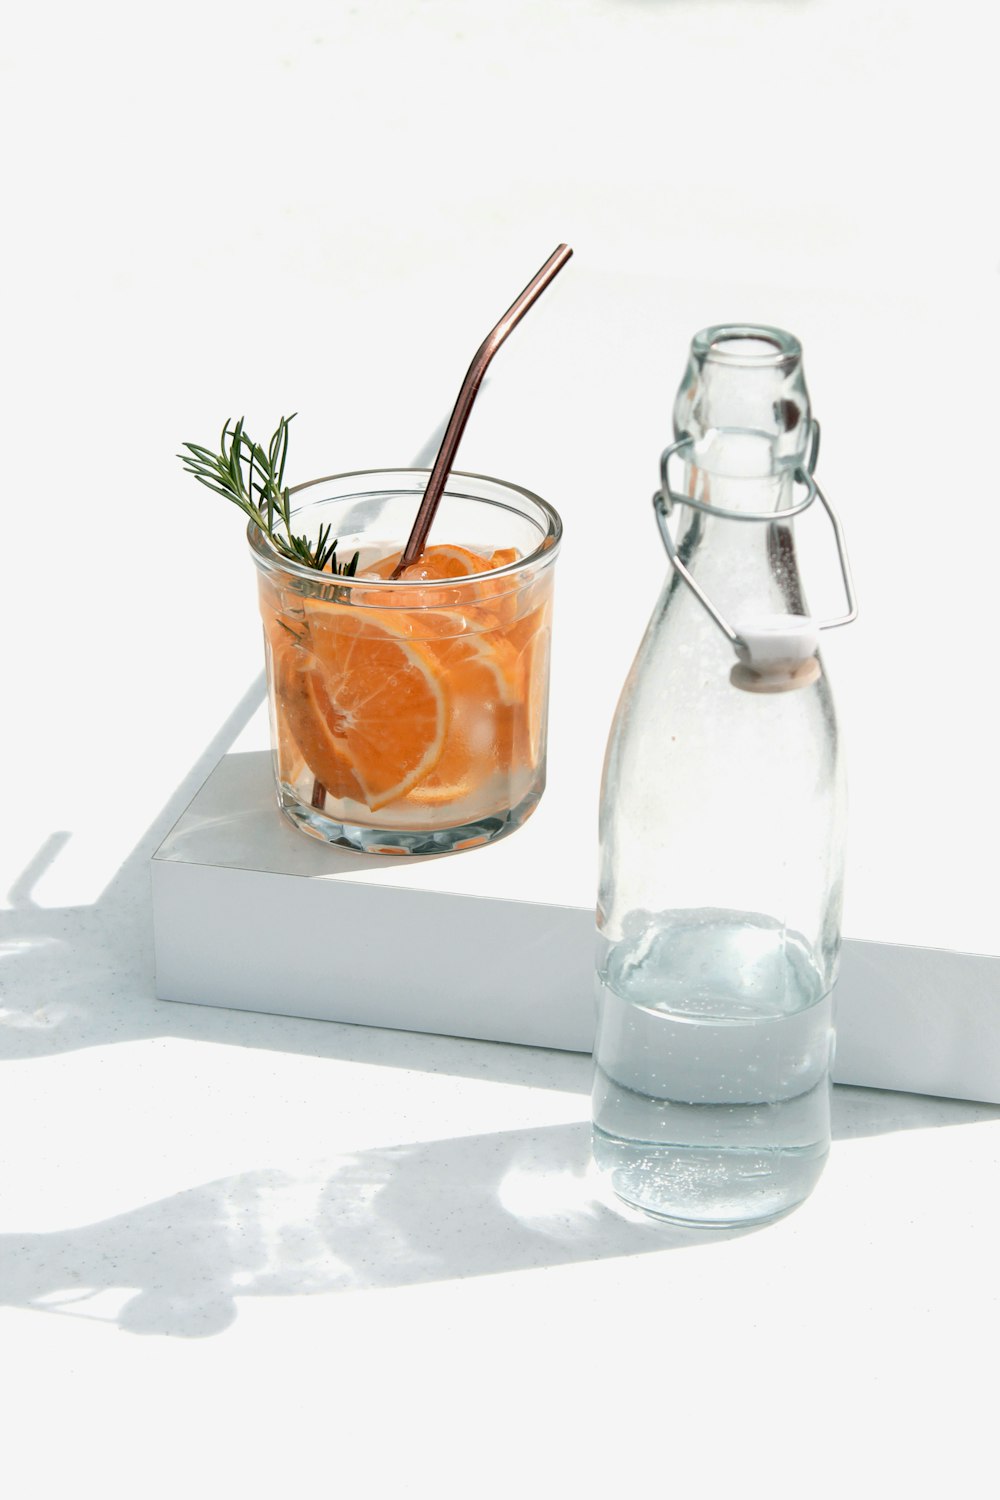 bouteille en verre transparent à côté du jus d’orange dans une bouteille en verre transparent